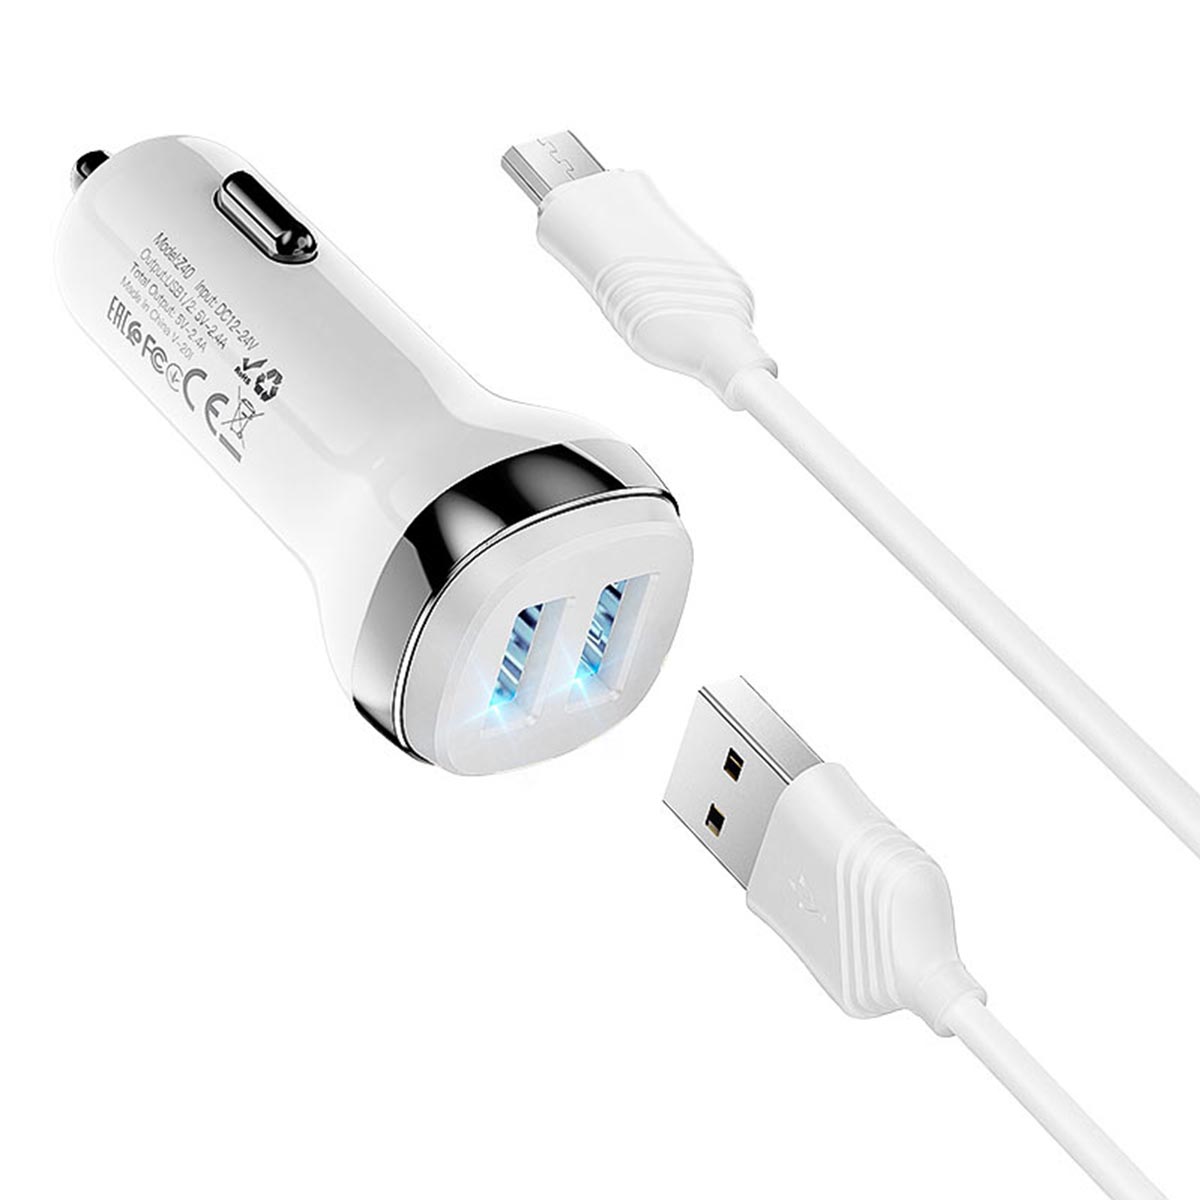 АЗУ (автомобильное зарядное устройство) HOCO Z40 Superior, 2 USB порта, кабель Type-C, 1 метр, цвет белый